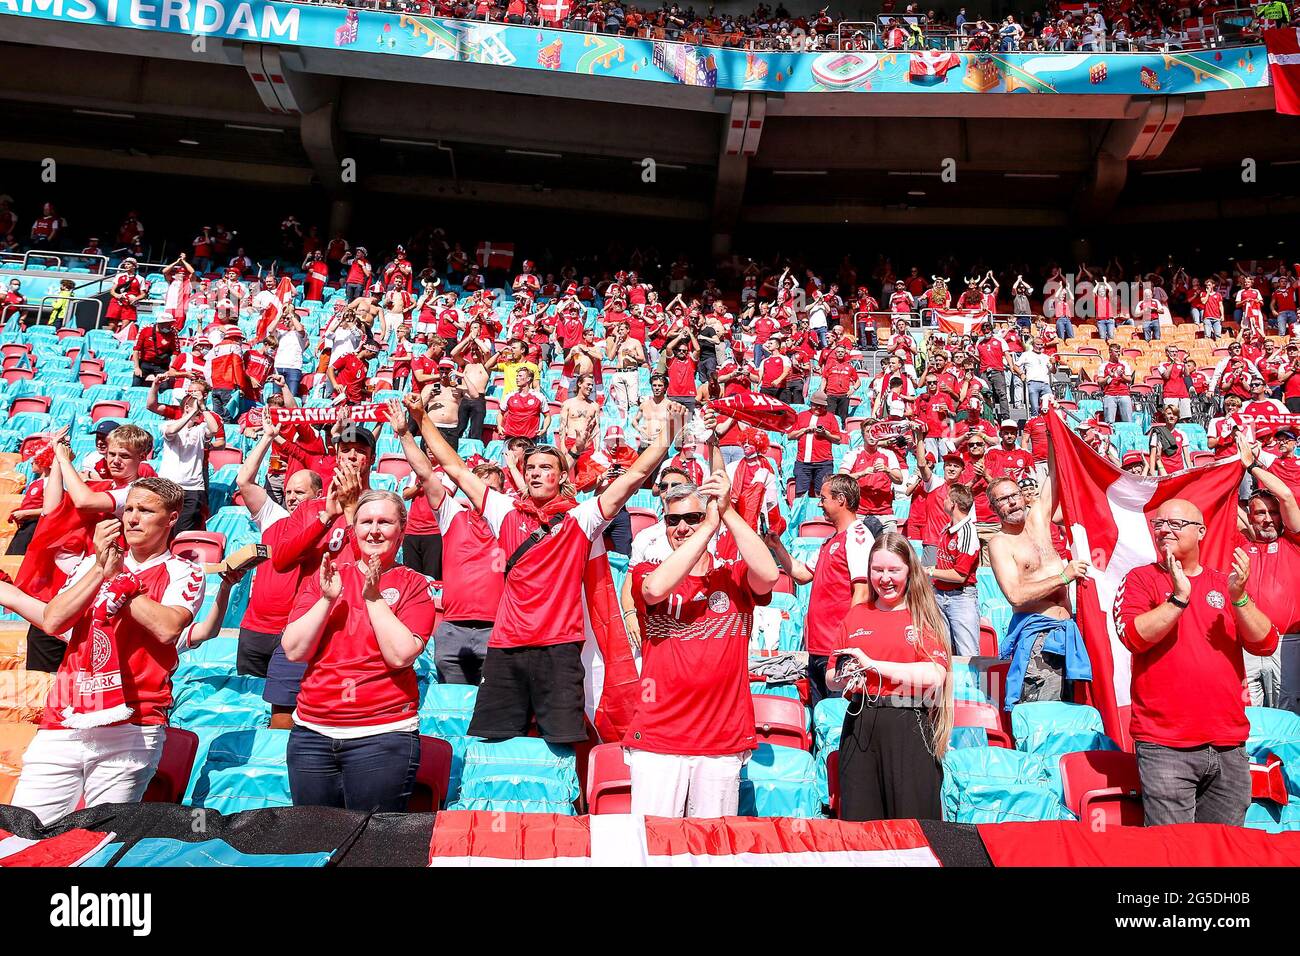 Dänemark-Fans jubeln ihr Team während der UEFA Euro 2020-Runde von 16 in der Johan Cruijff Arena in Amsterdam, Niederlande an. Bilddatum: Samstag, 26. Juni 2021. Stockfoto